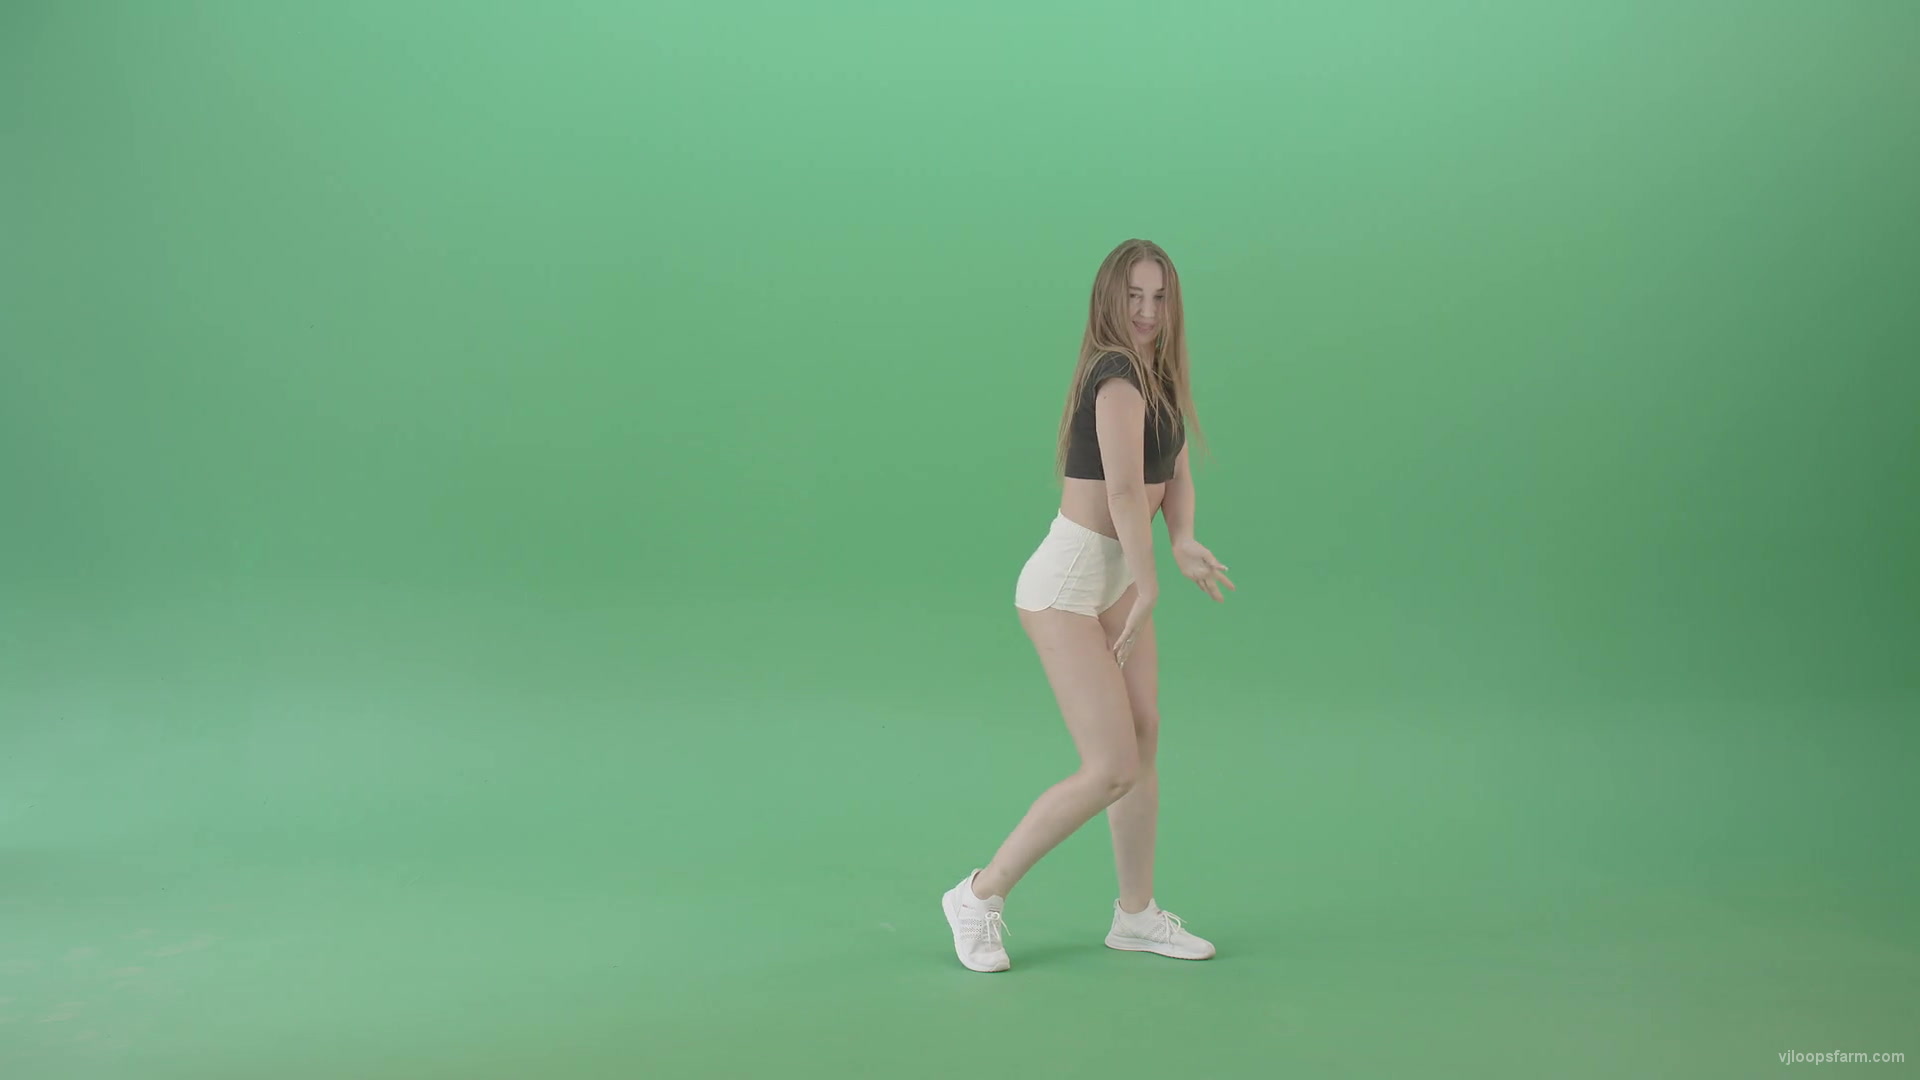 Twerking Girl dancing over Green Screen